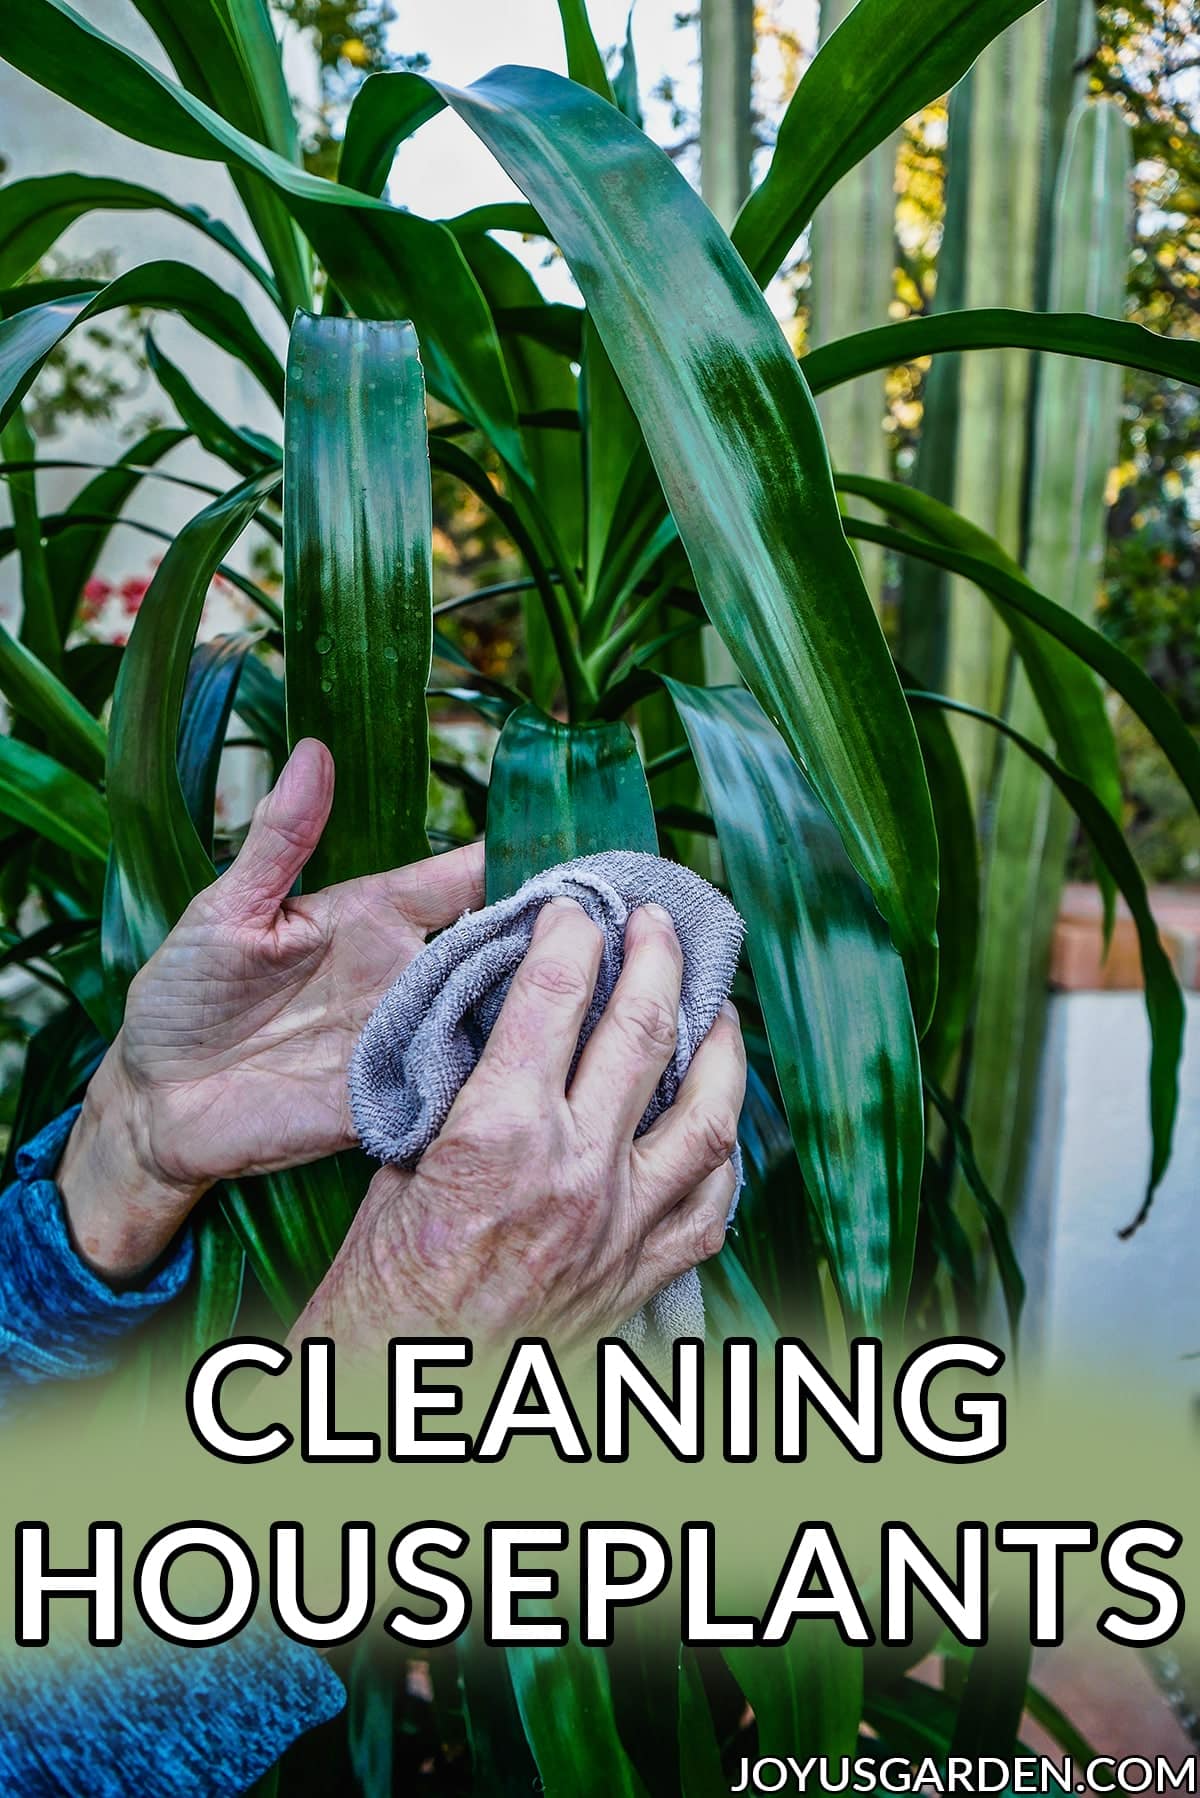  Cleaning houseplants: Hoe &amp; amp; Wêrom ik doch it